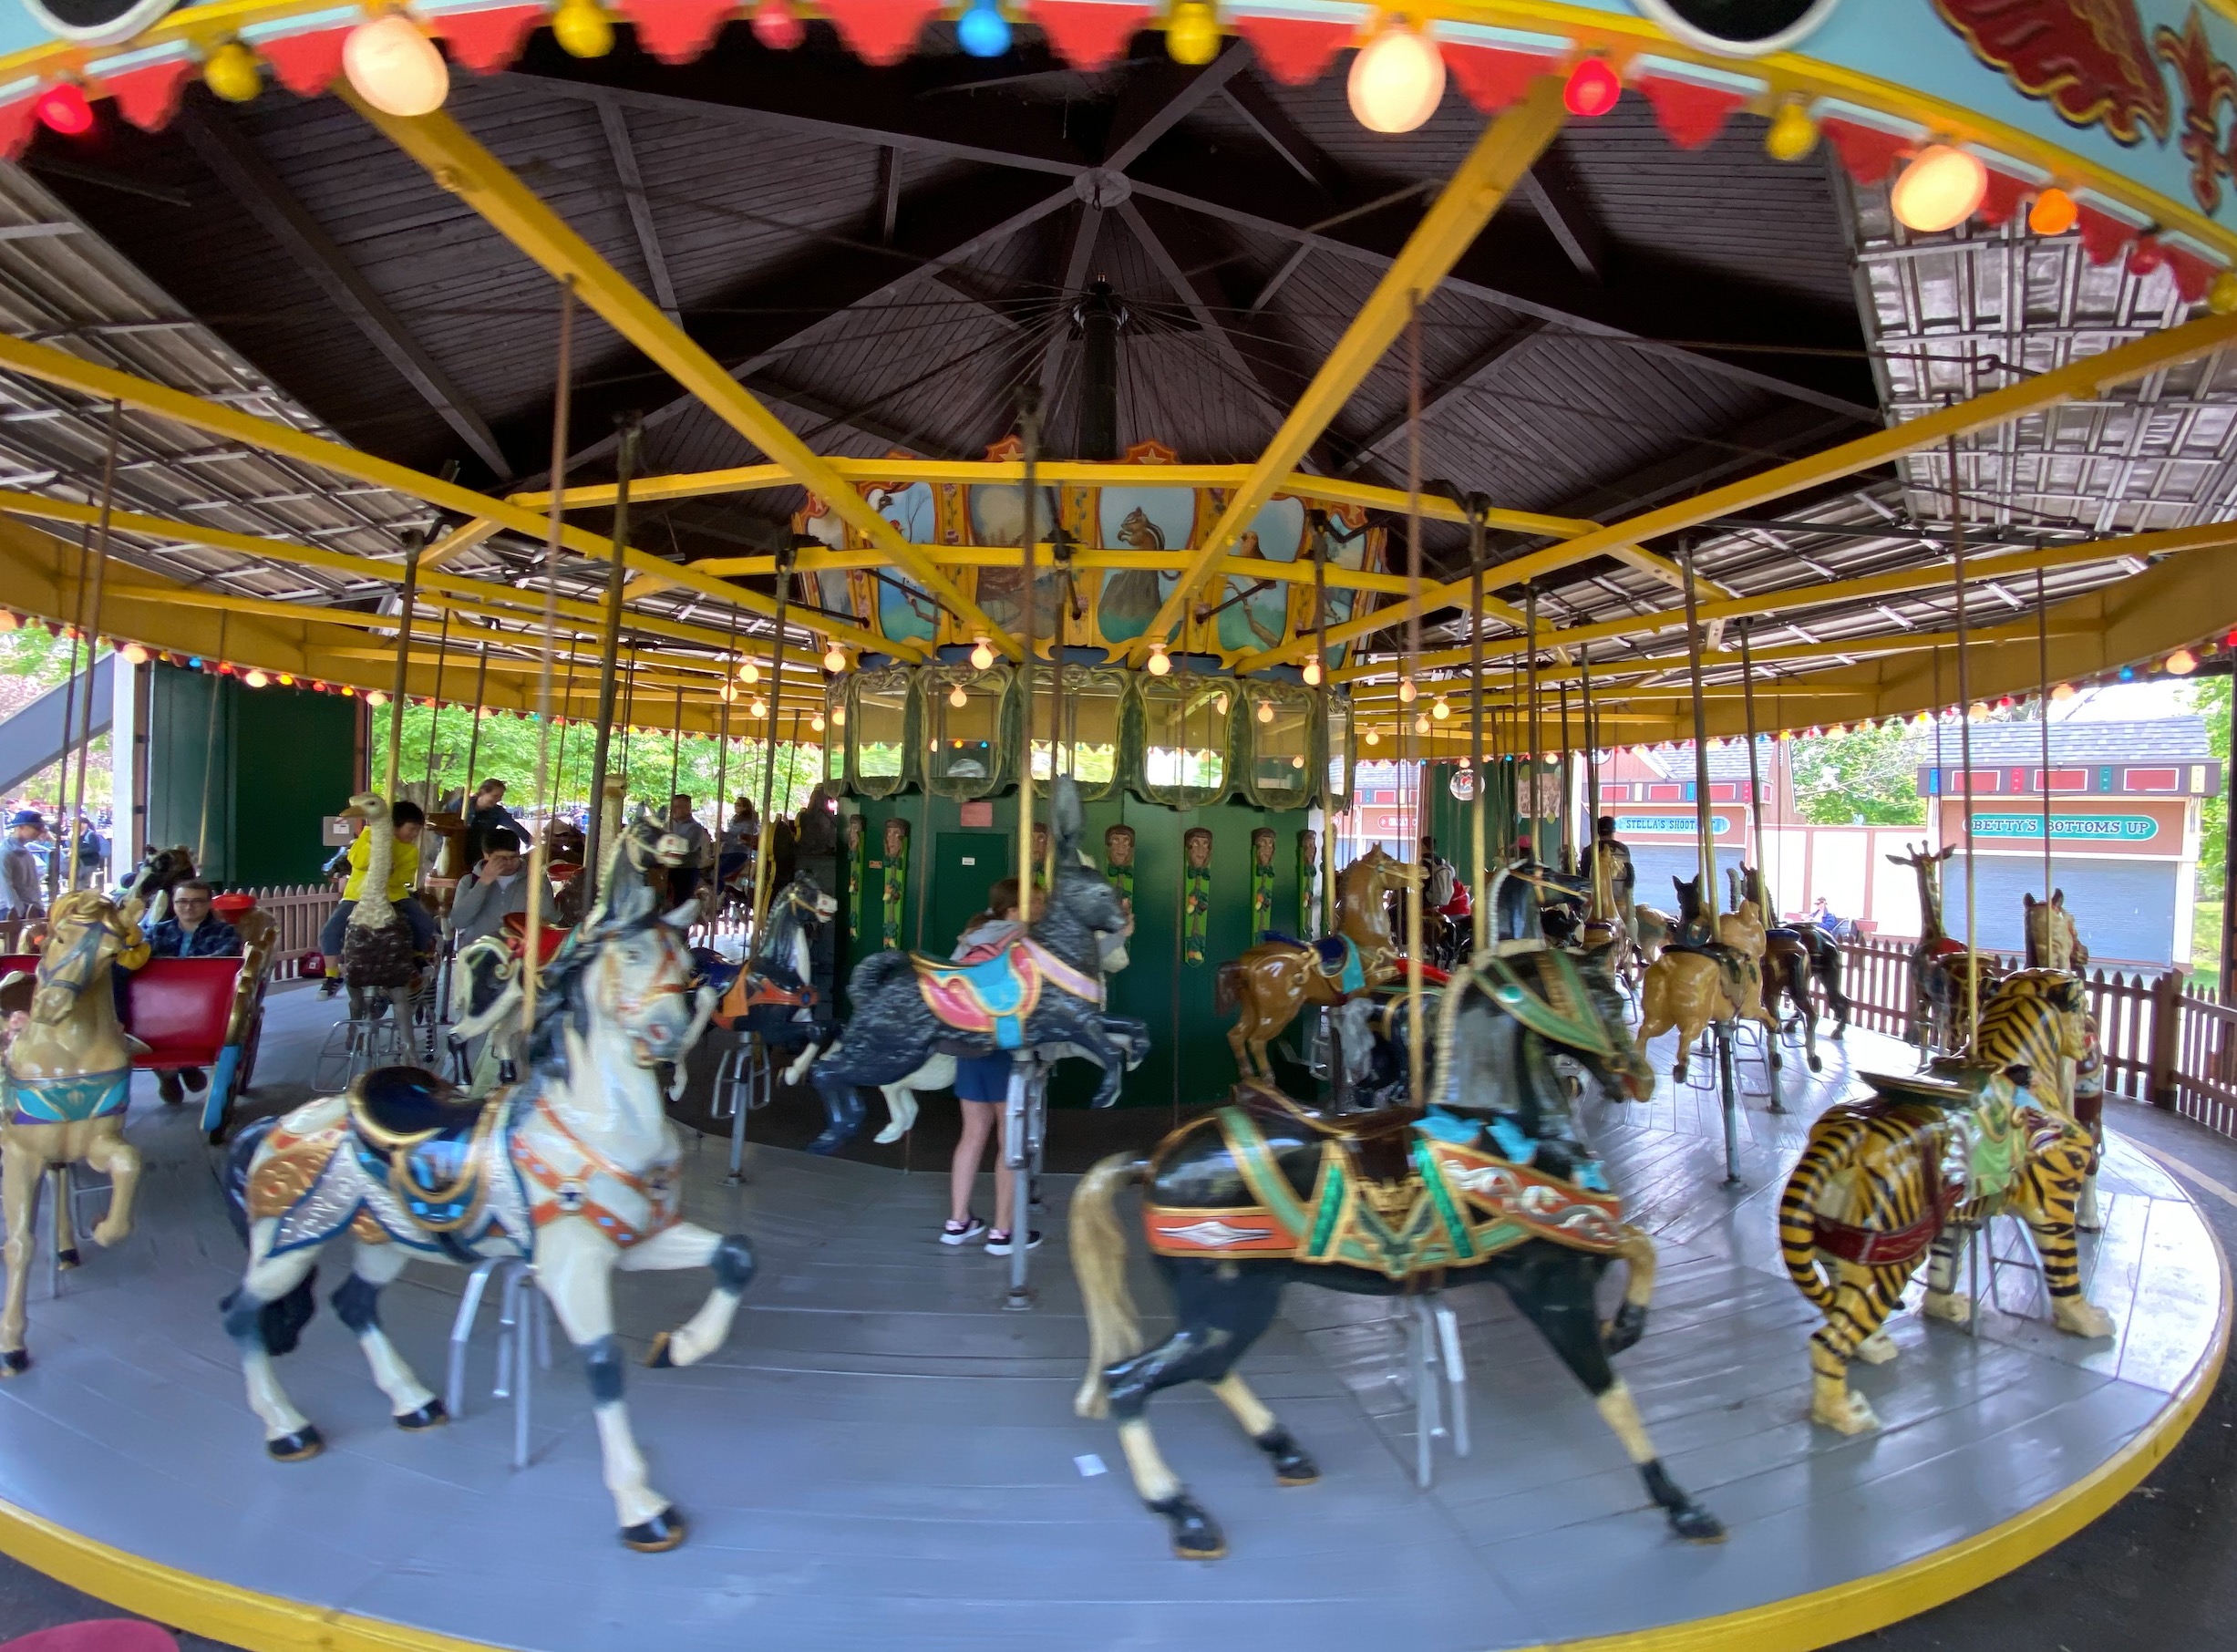 Carousel at Centreville Amusement Park